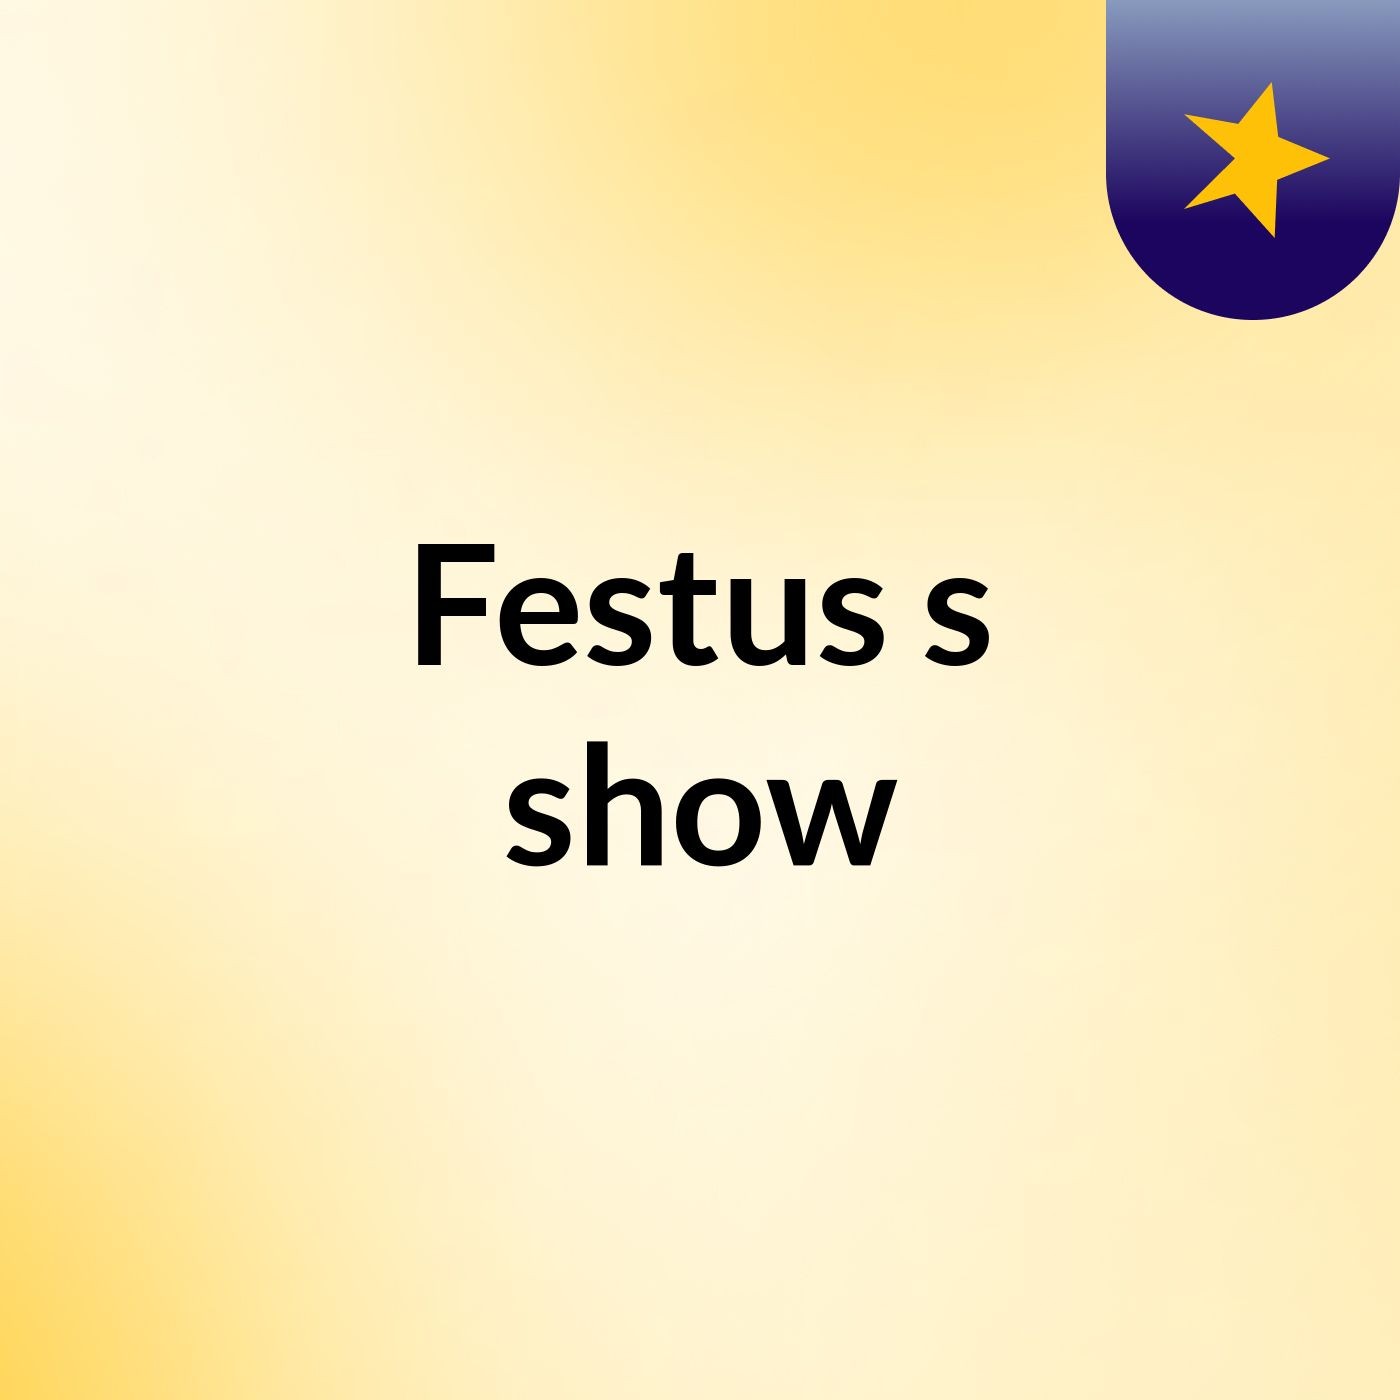 Festus's show